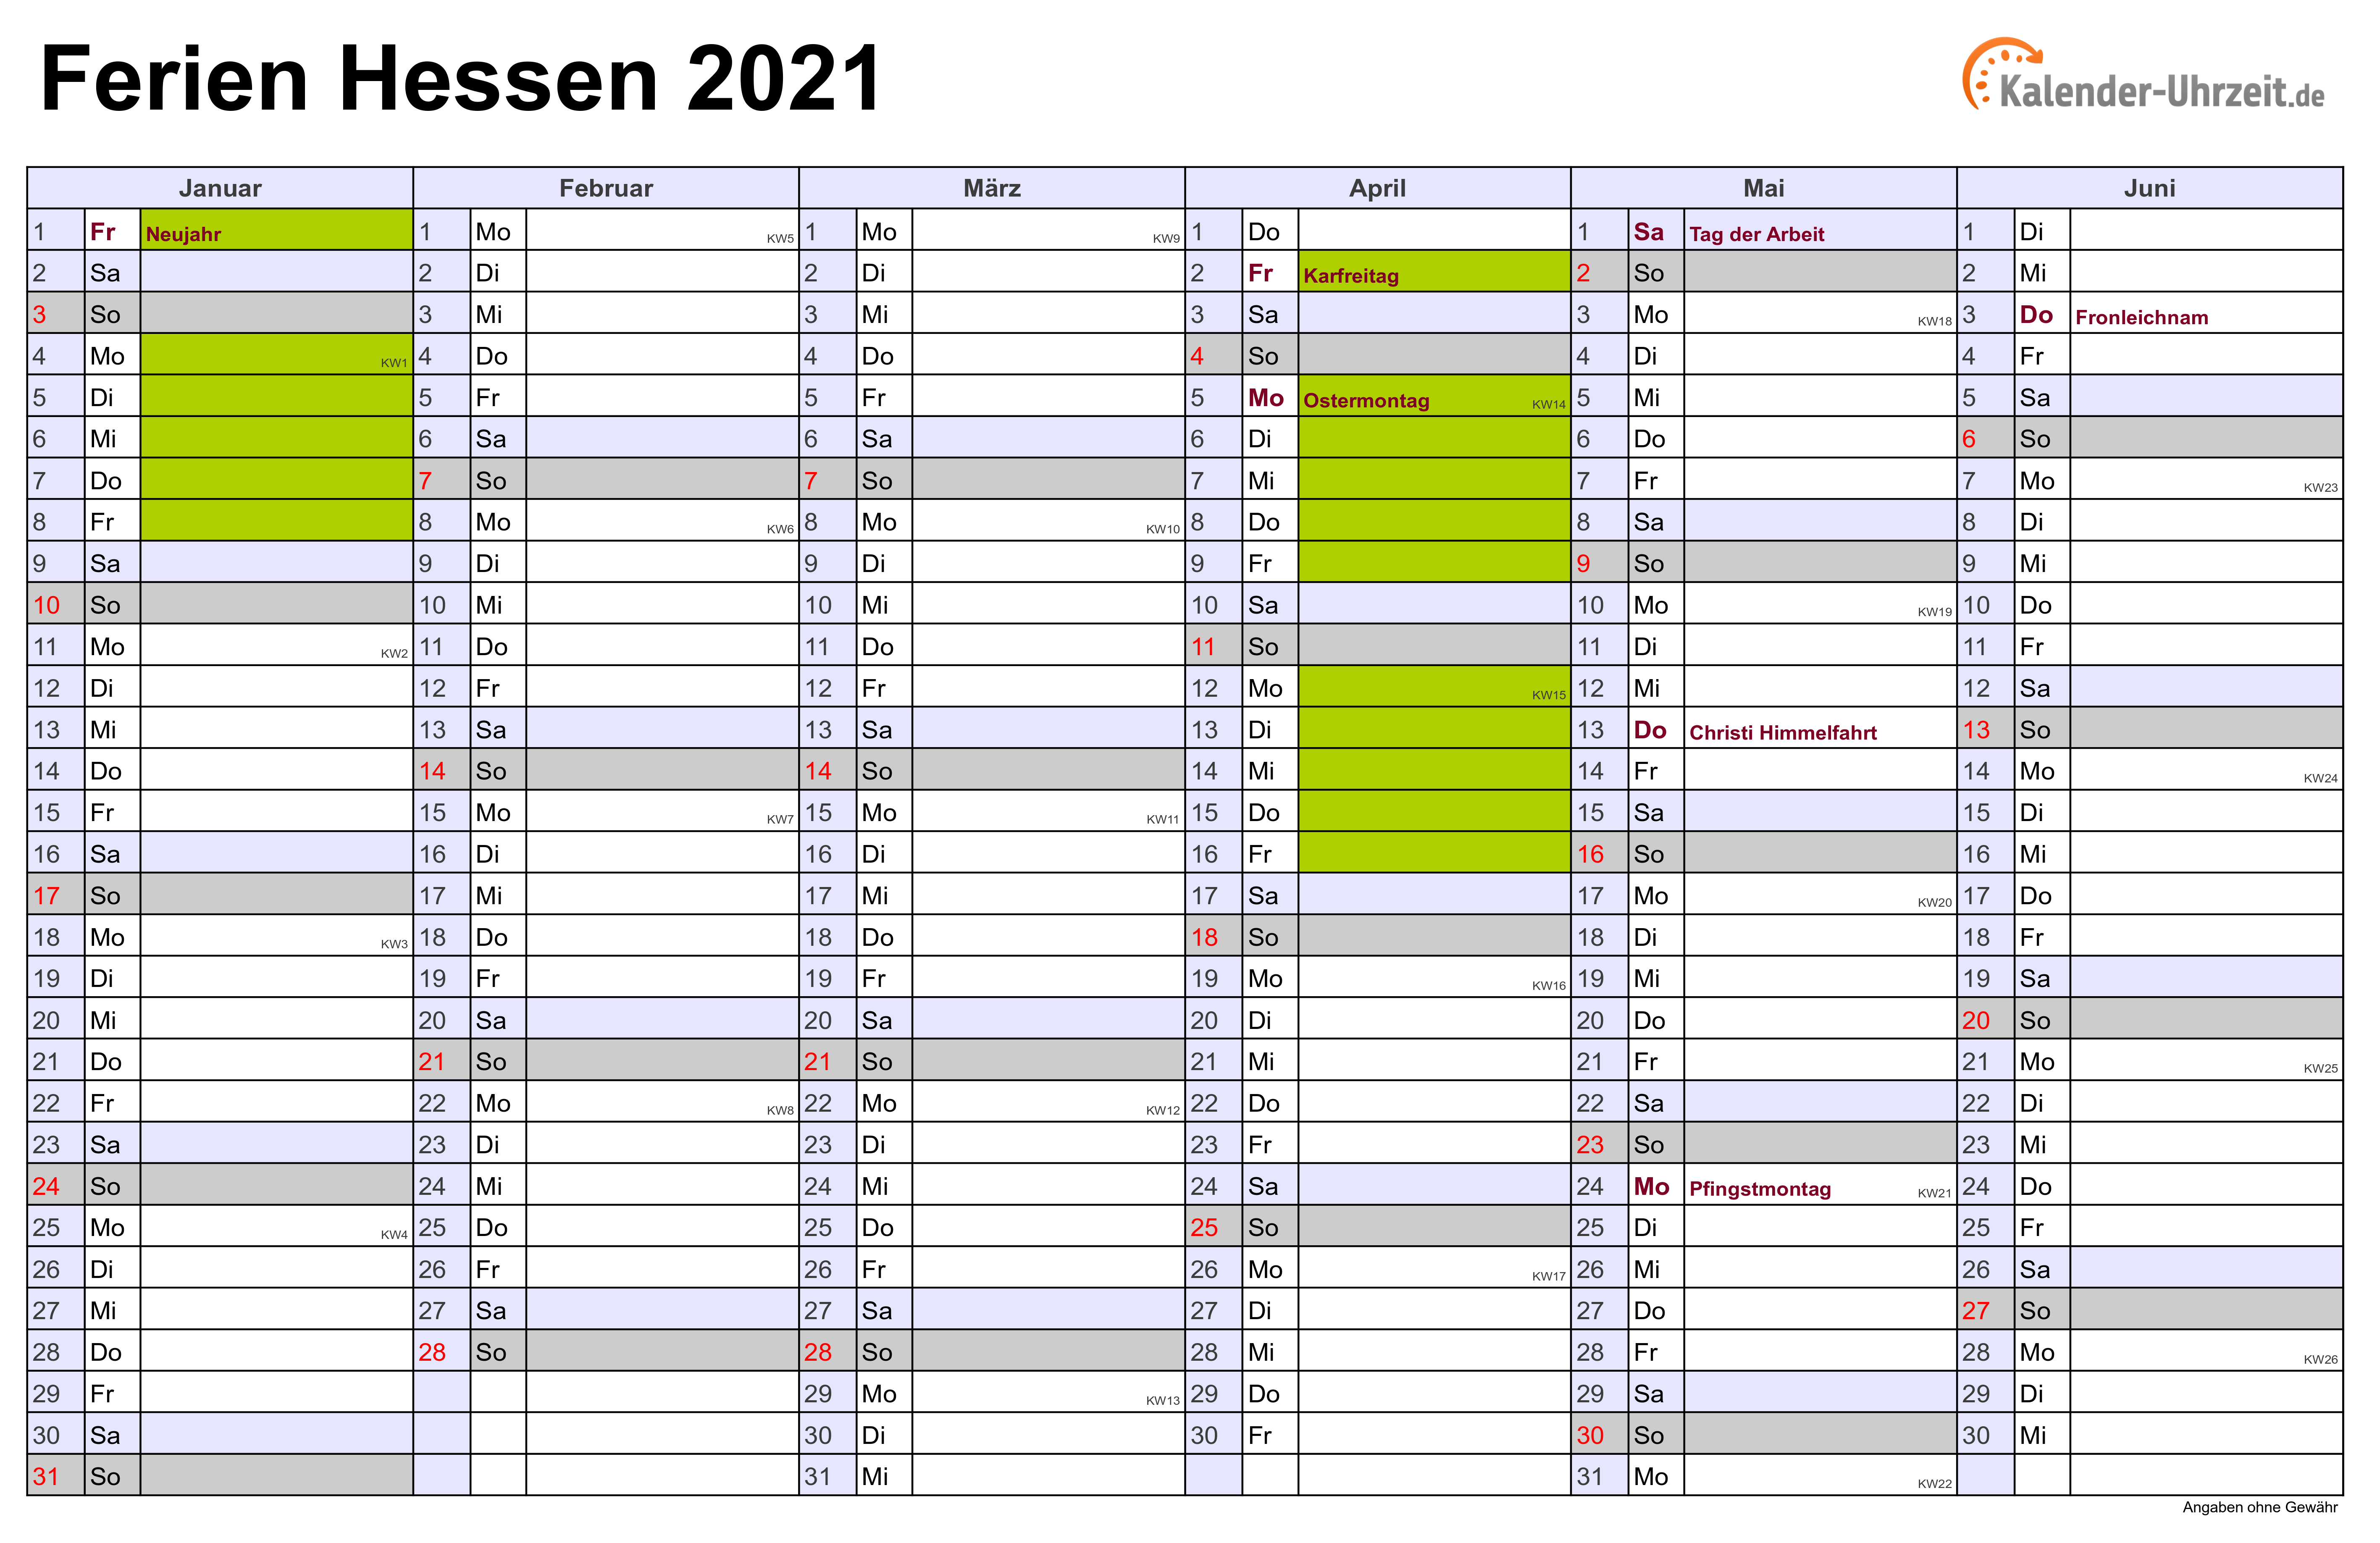 Ferien Hessen 2021 - Ferienkalender zum Ausdrucken